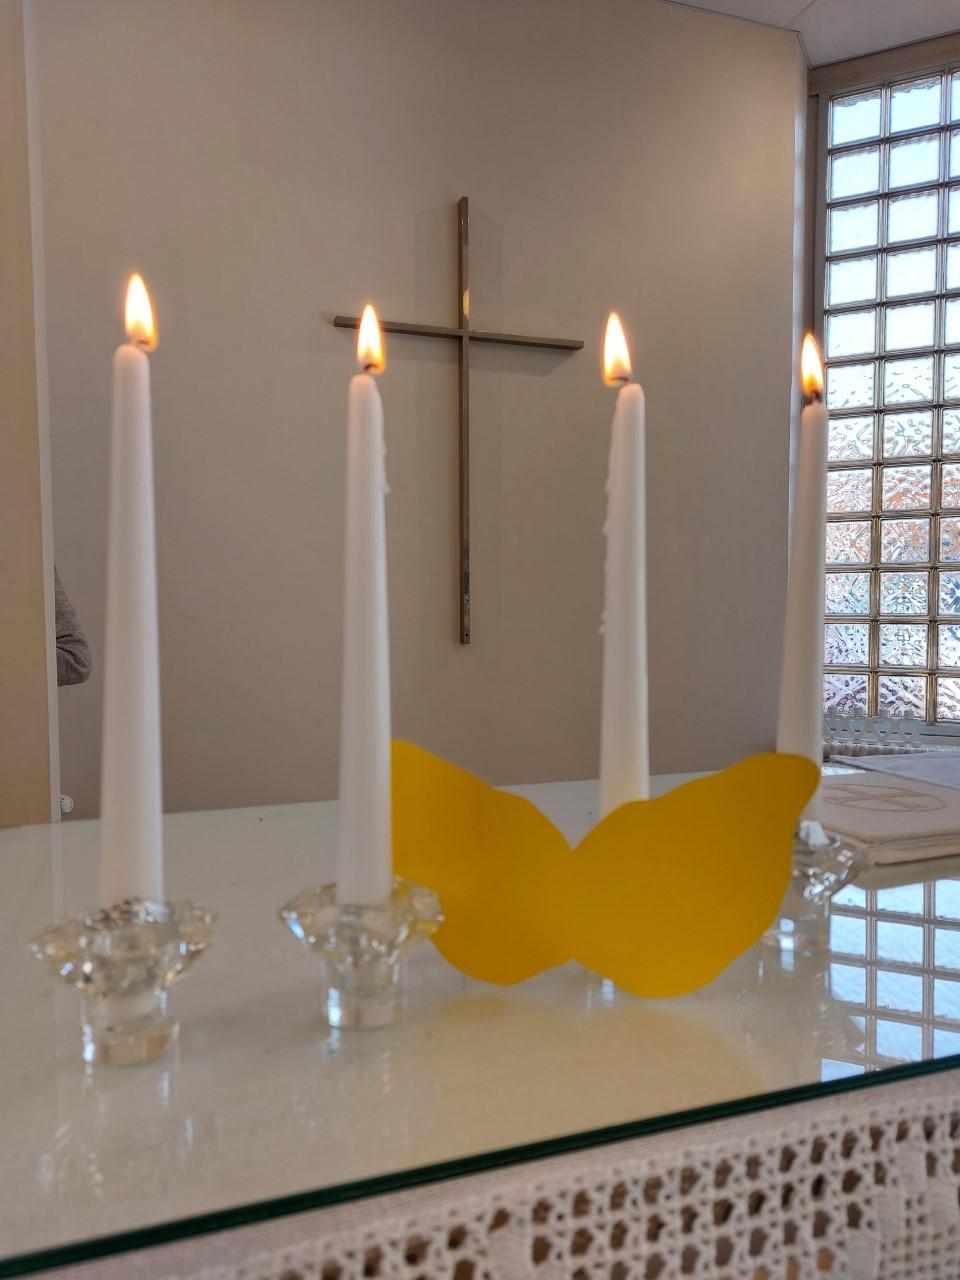 Veikkolan seurakuntakodin alttarilla palaa neljä kynttilää. Kynttilöiden välissä on pienet enkelinsiivet.